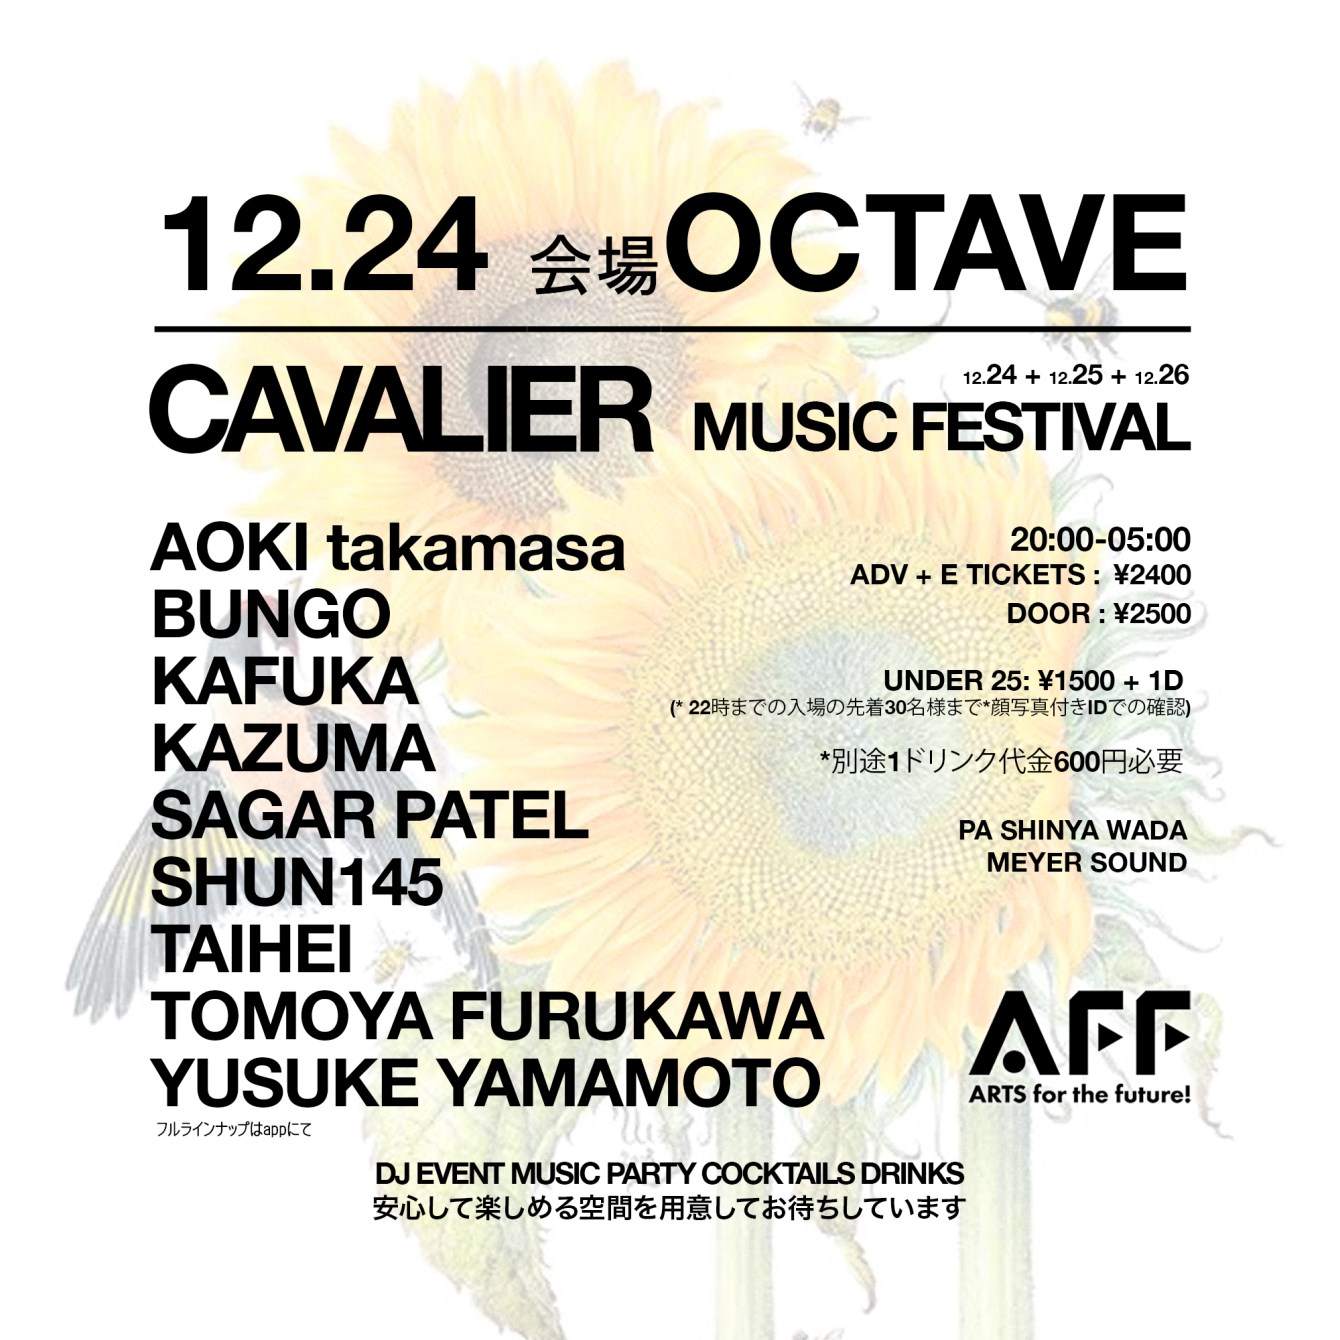 12月24日 会場 Octave - Cavalier Music Festival - Página frontal